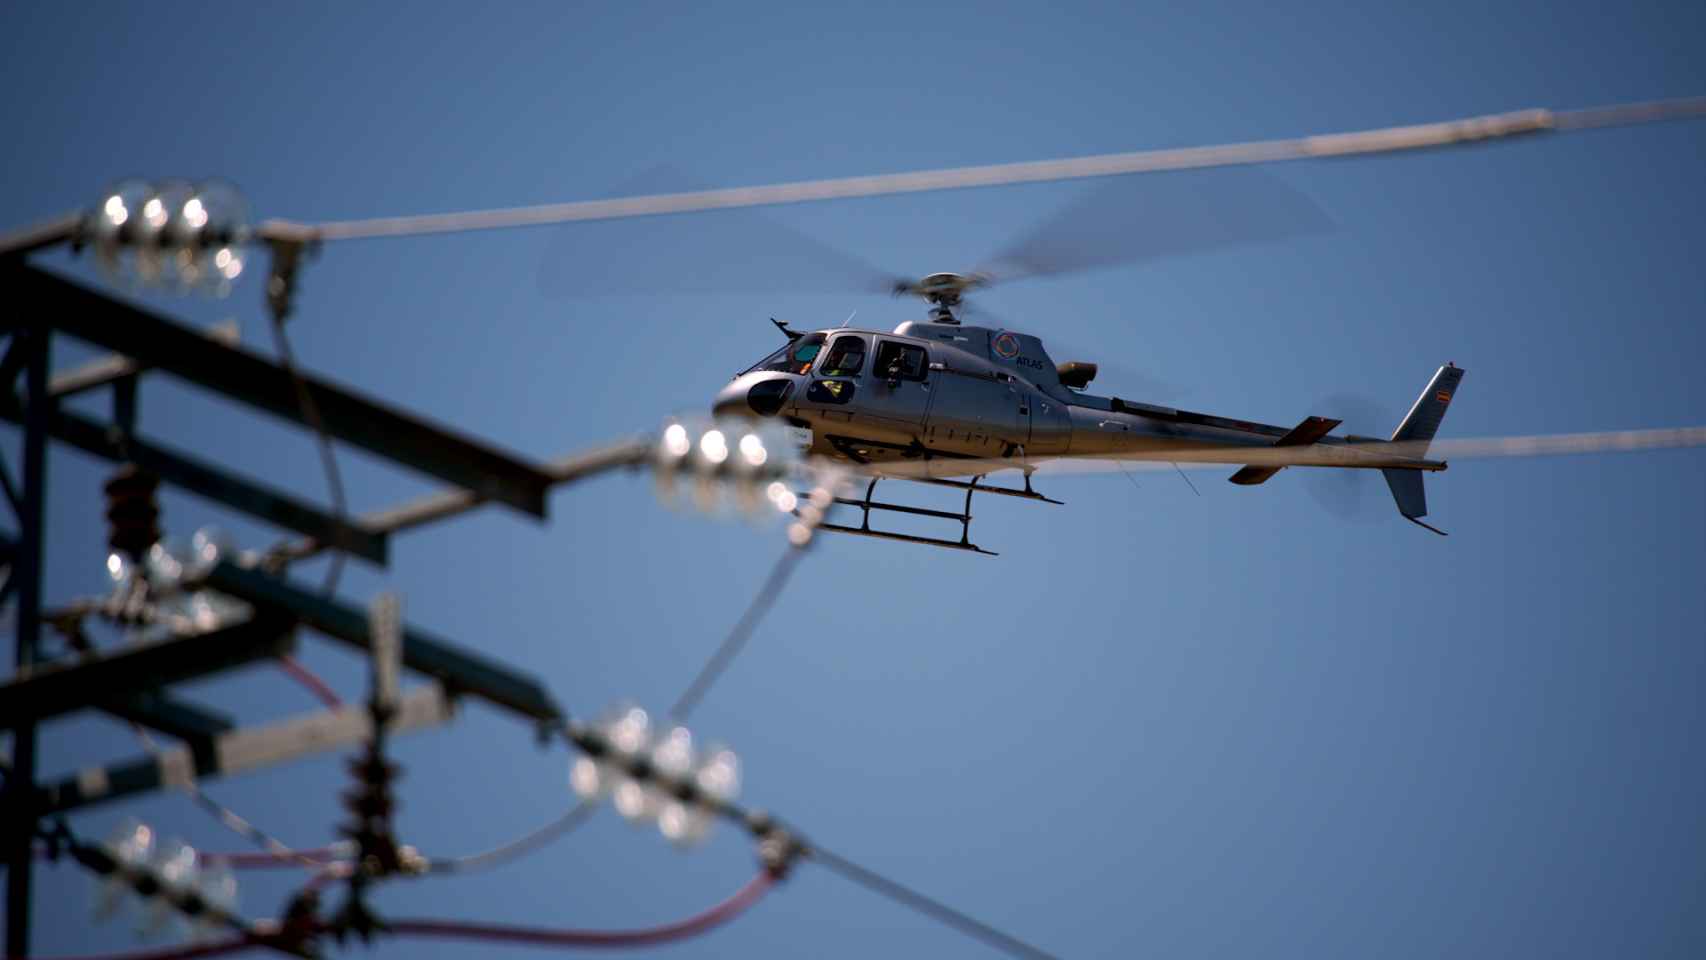 Reconocimiento de las infraestructuras eléctricas con helicópteros equipados con cámaras infrarrojas que miden la temperatura de las instalaciones/Iberdrola